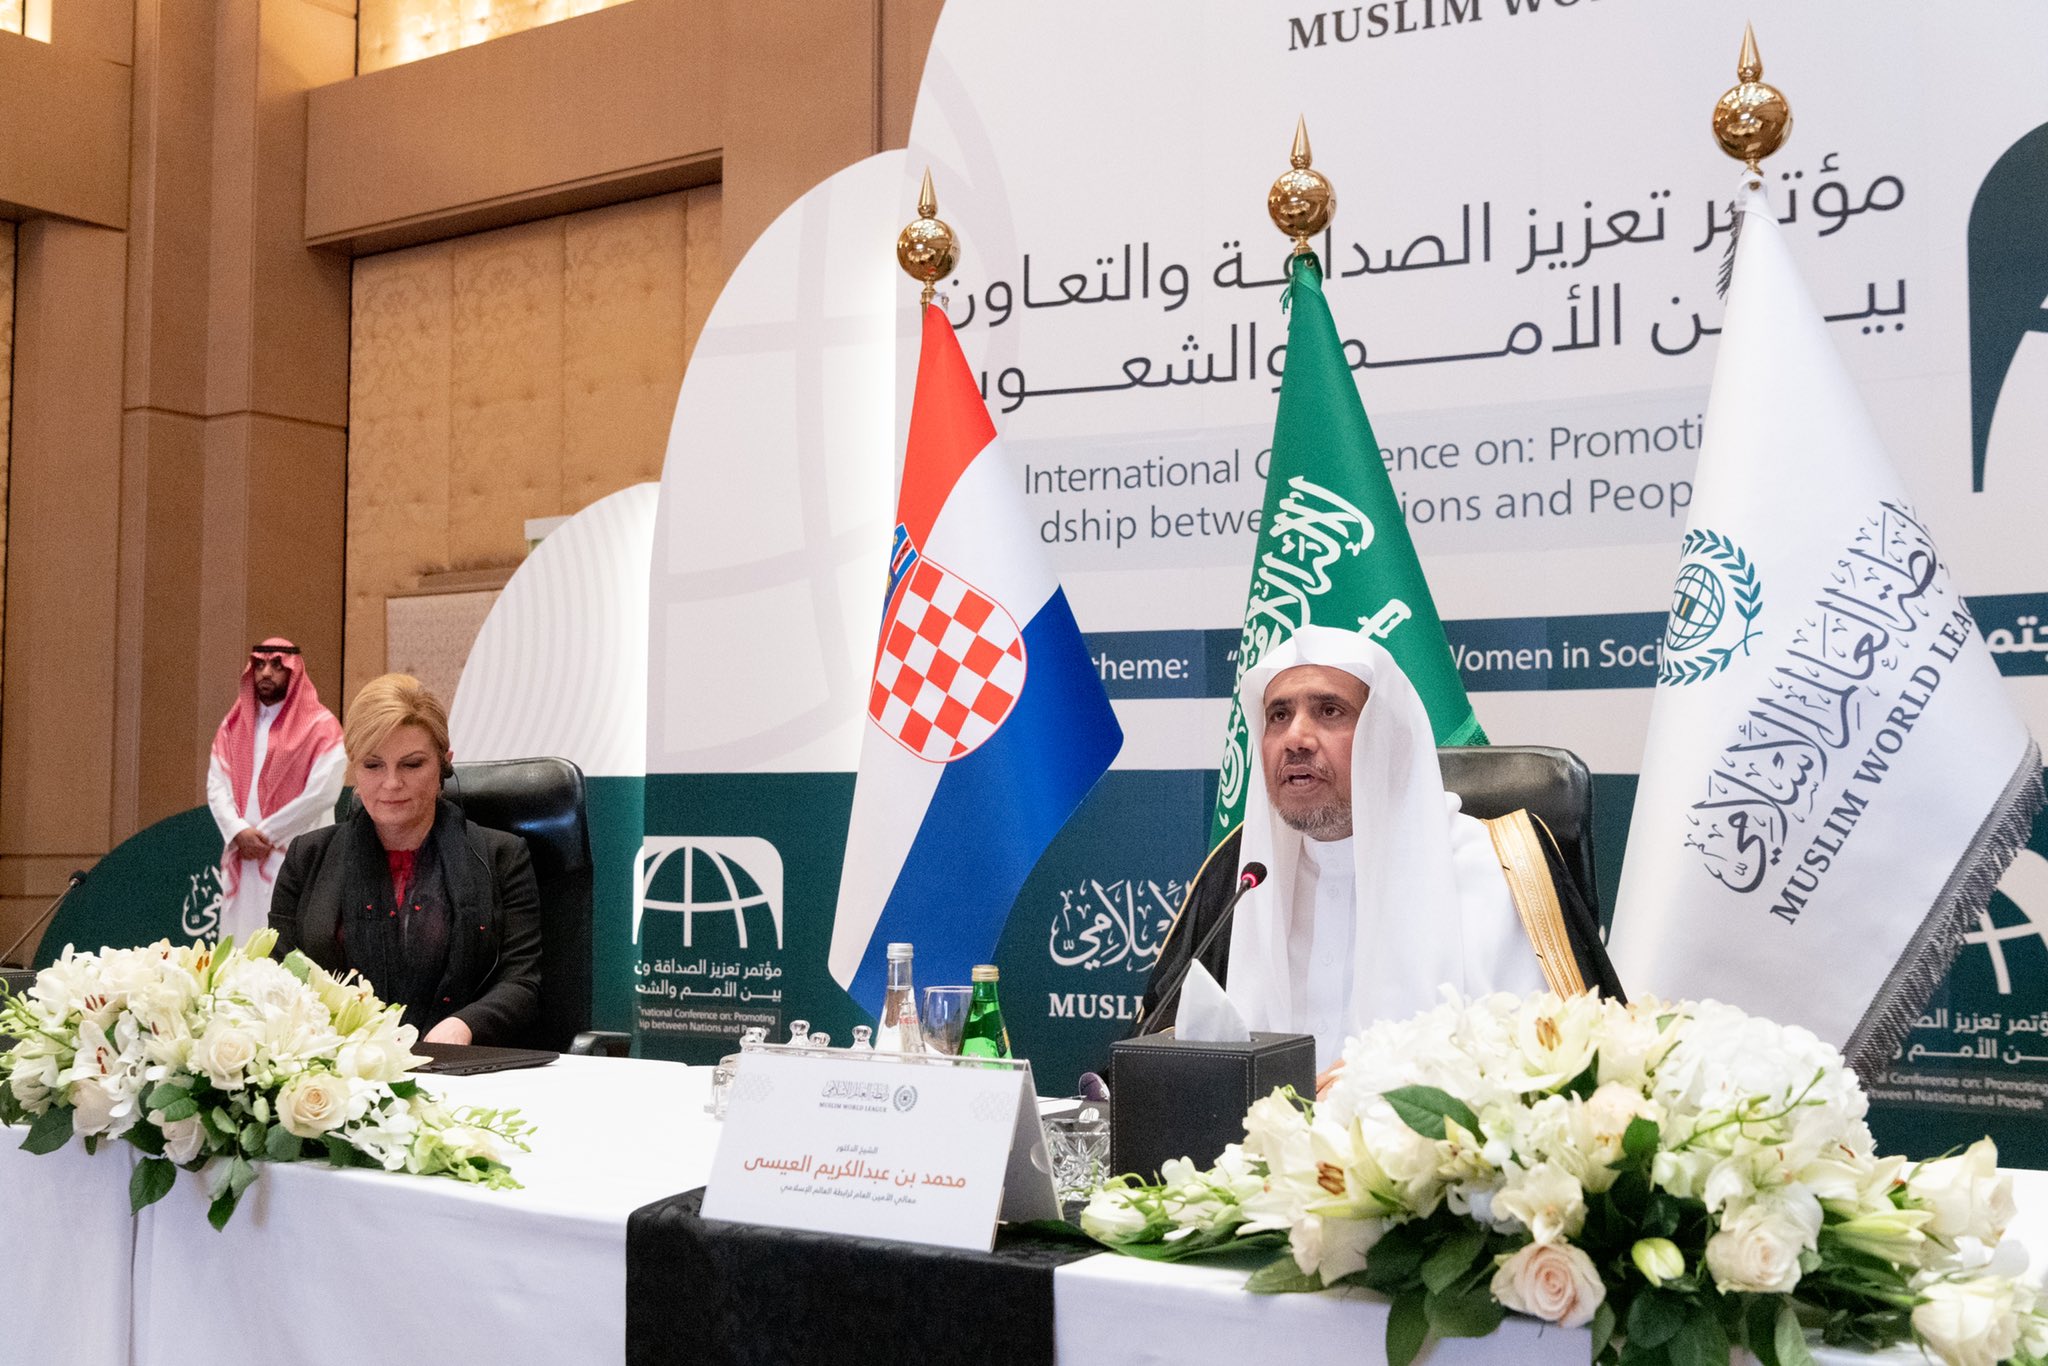 Le congrès «Renforcer l’amitié et la coopération entre les nations et les peuples» a été lancé à Riyad en présence de Mohammad Alissa ainsi que l’ancienne présidente croate et militante pour la paix Mme Kolinda Kitarovic.